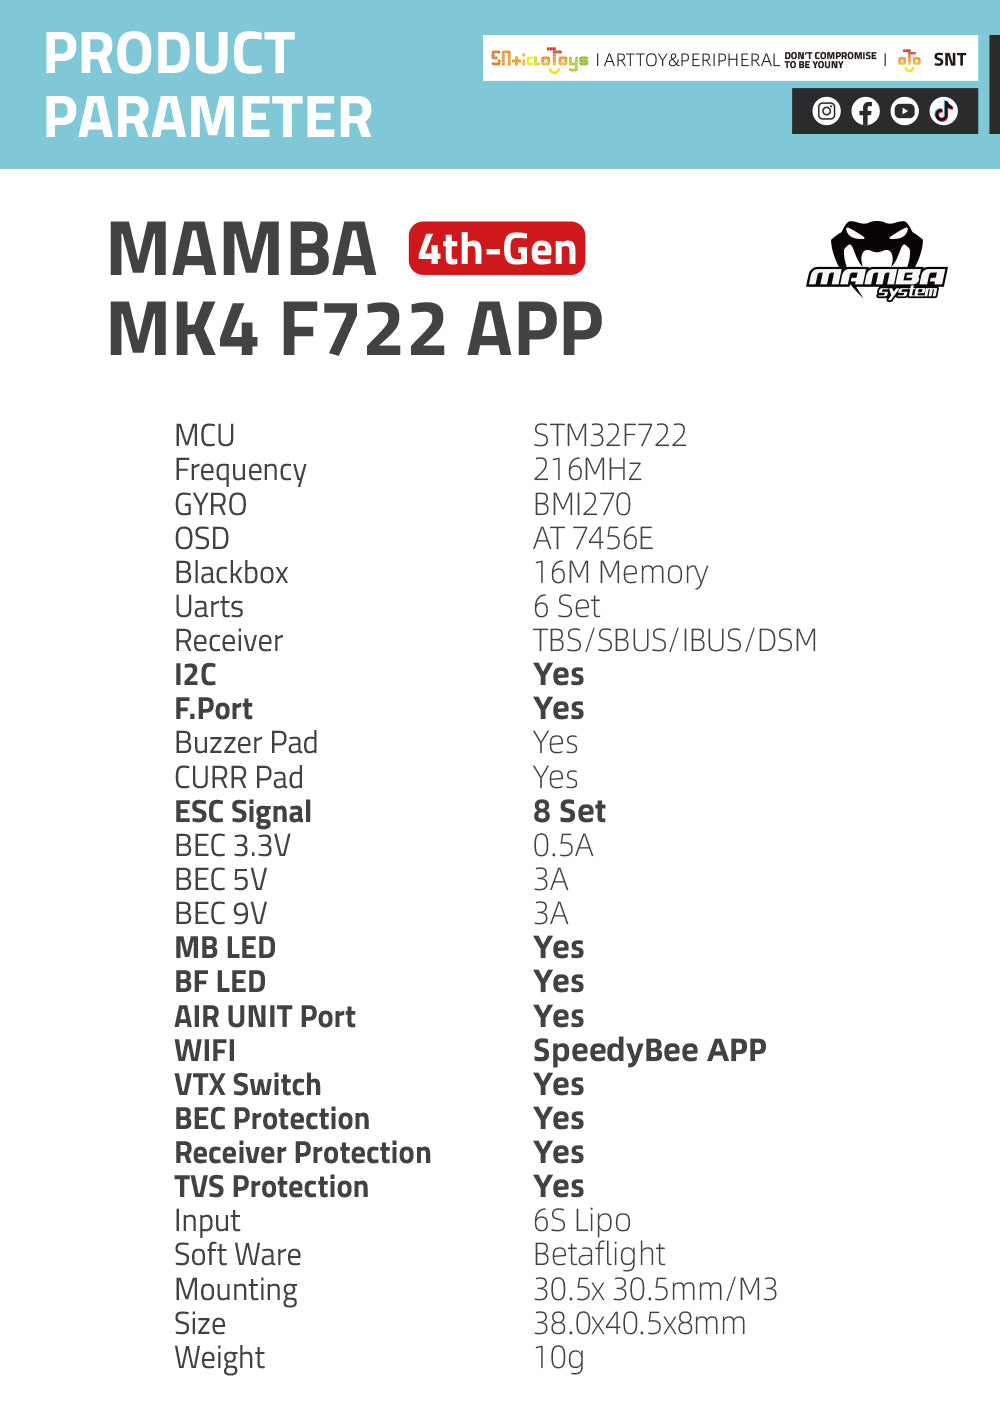 MK4 F722 APP